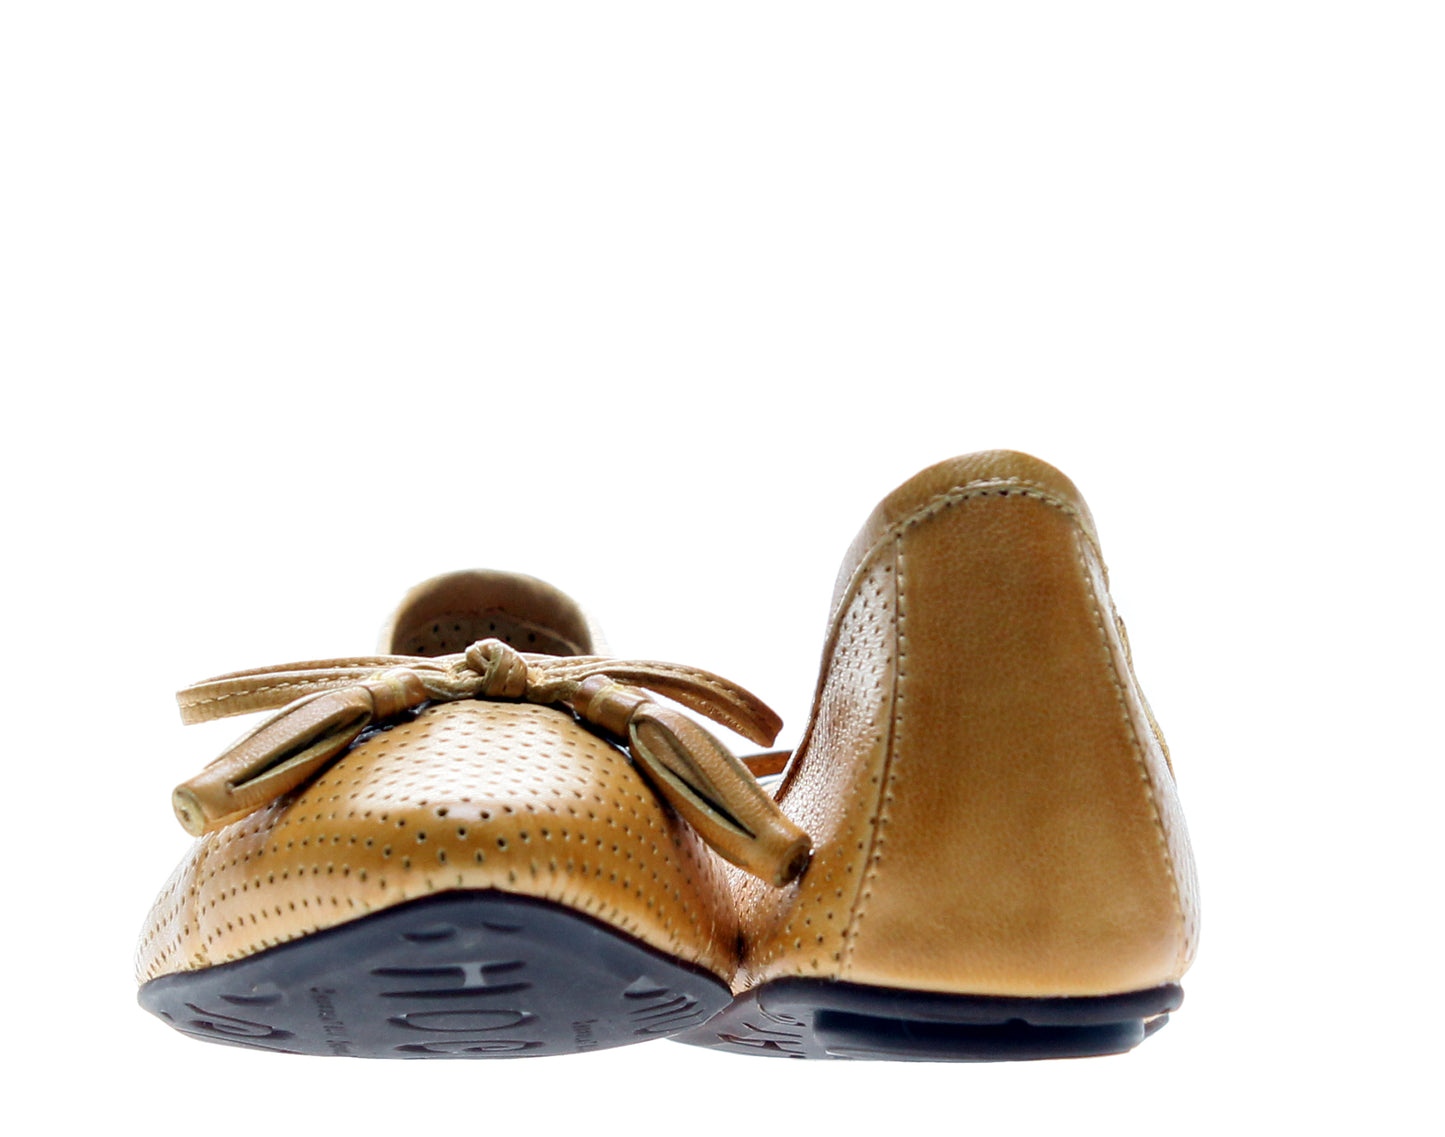 Chocolat Blu Gabriella Moccasin Flat Mustard Leather Women's Shoes